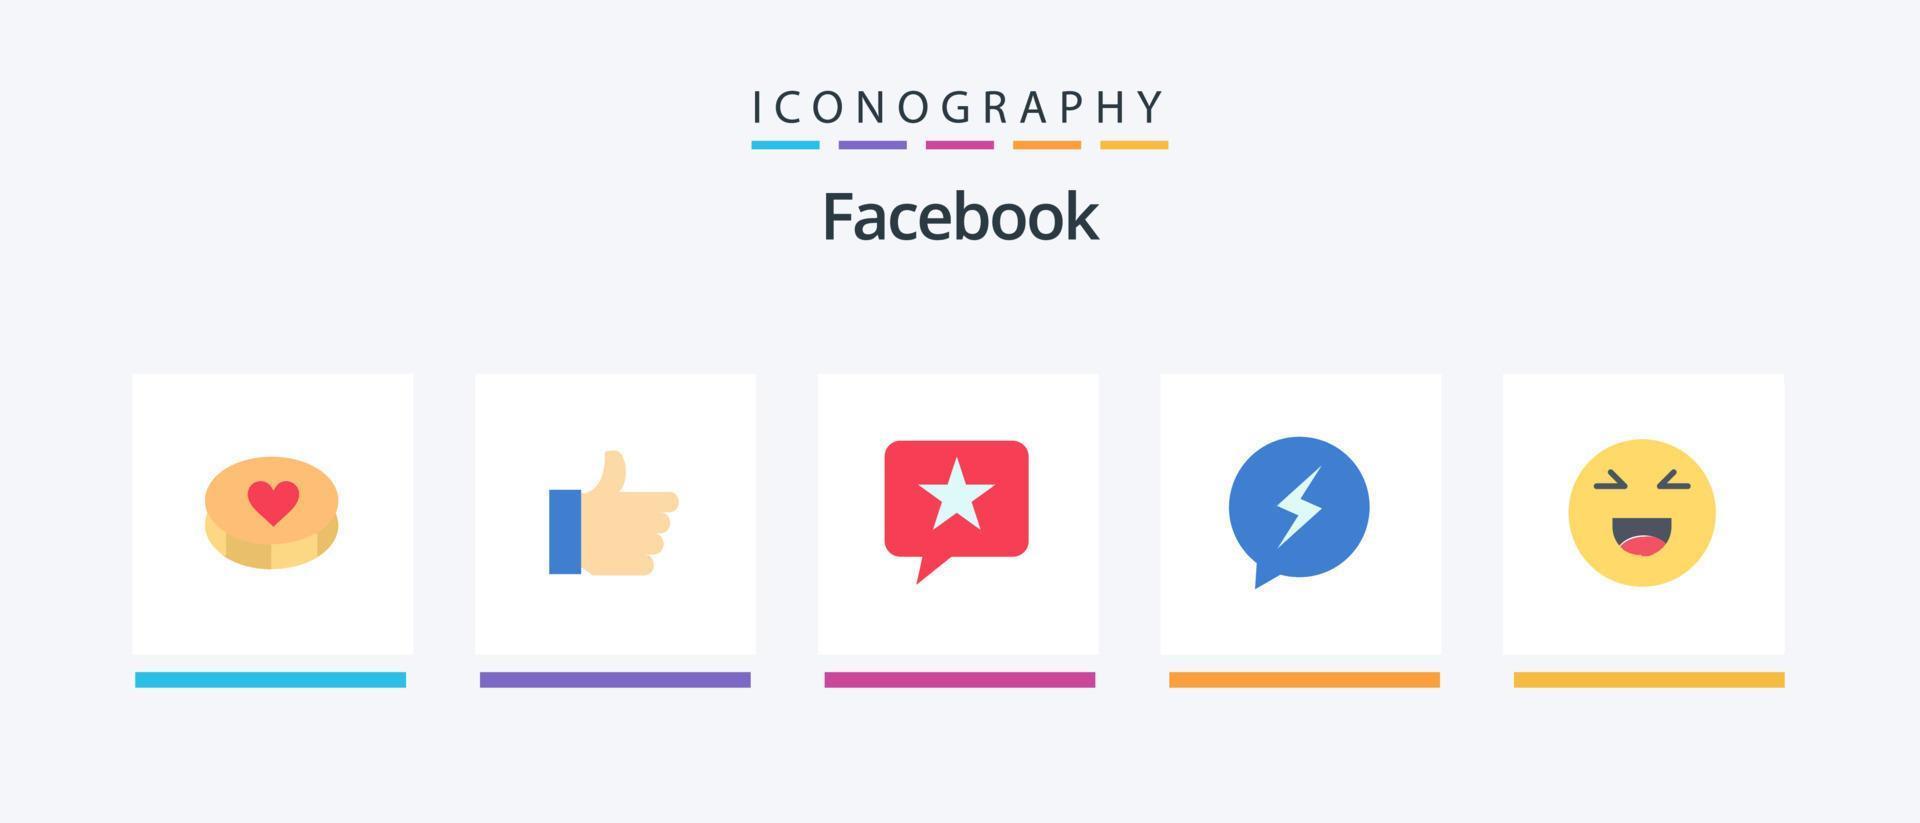 paquete de iconos de facebook flat 5 que incluye emoji. fuerza. charlar. charlando charlar. diseño de iconos creativos vector